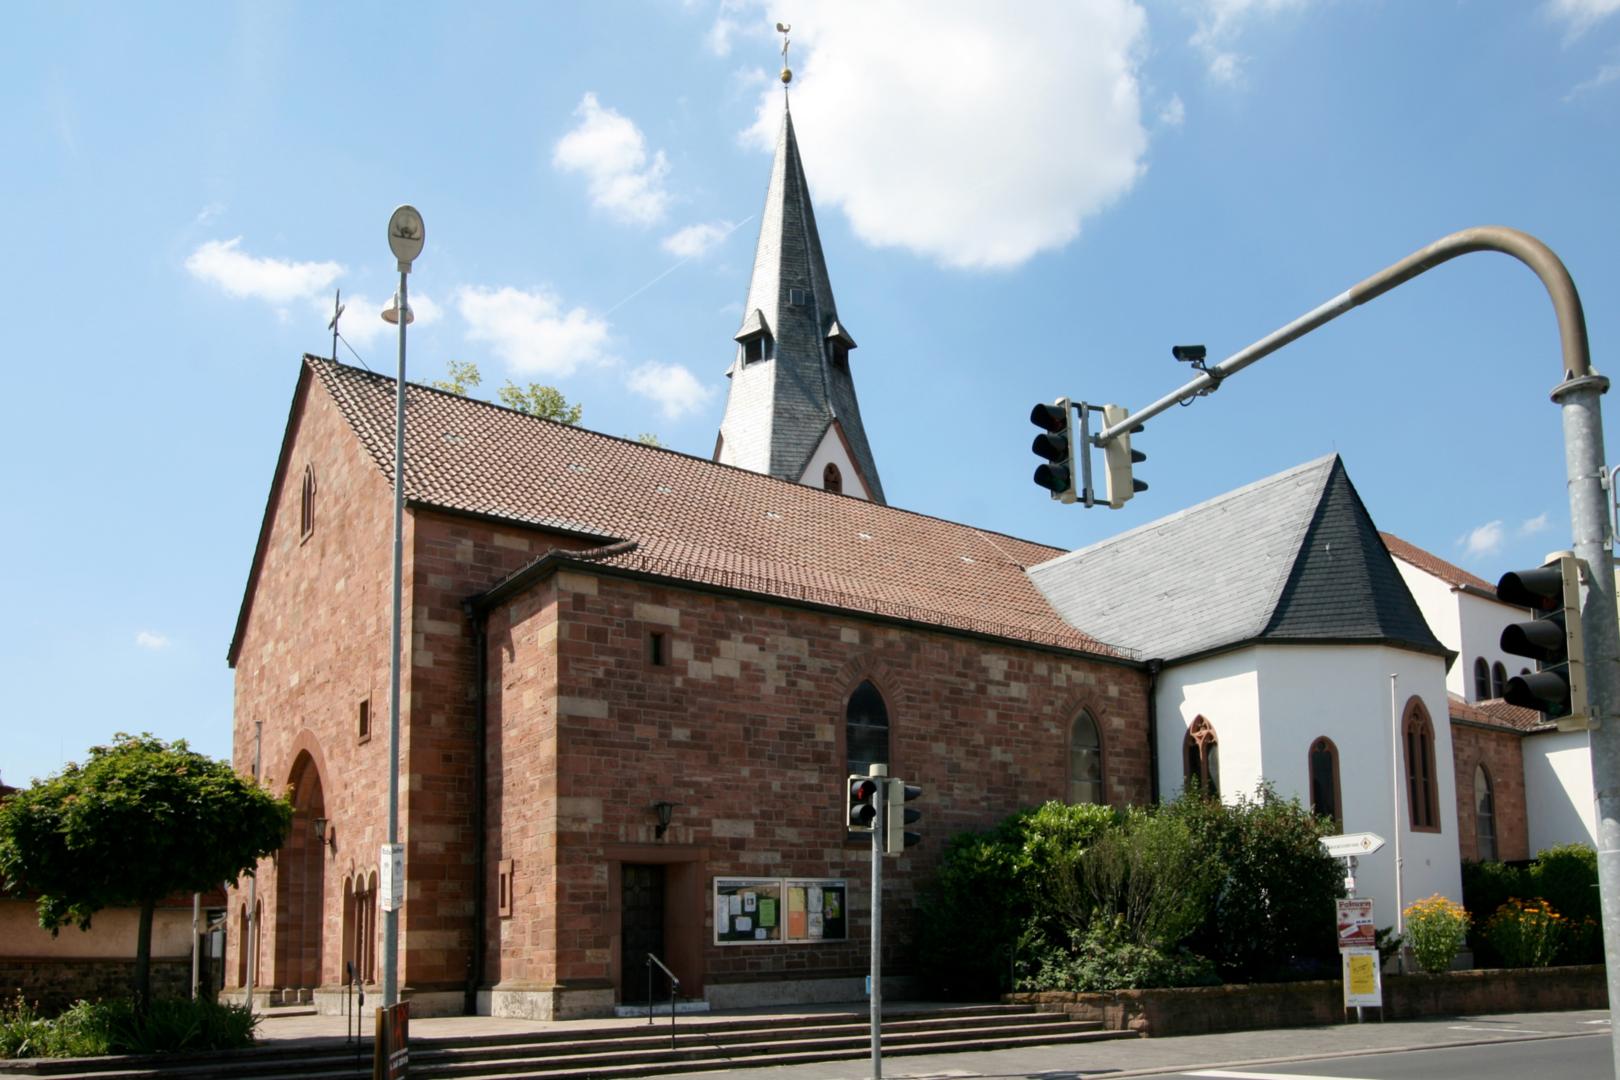 St. Petrus in Ketten Weiskirchen (c) Von E-W - Eigenes Werk, CC BY-SA 3.0, https://commons.wikimedia.org/w/index.php?curid=10784249